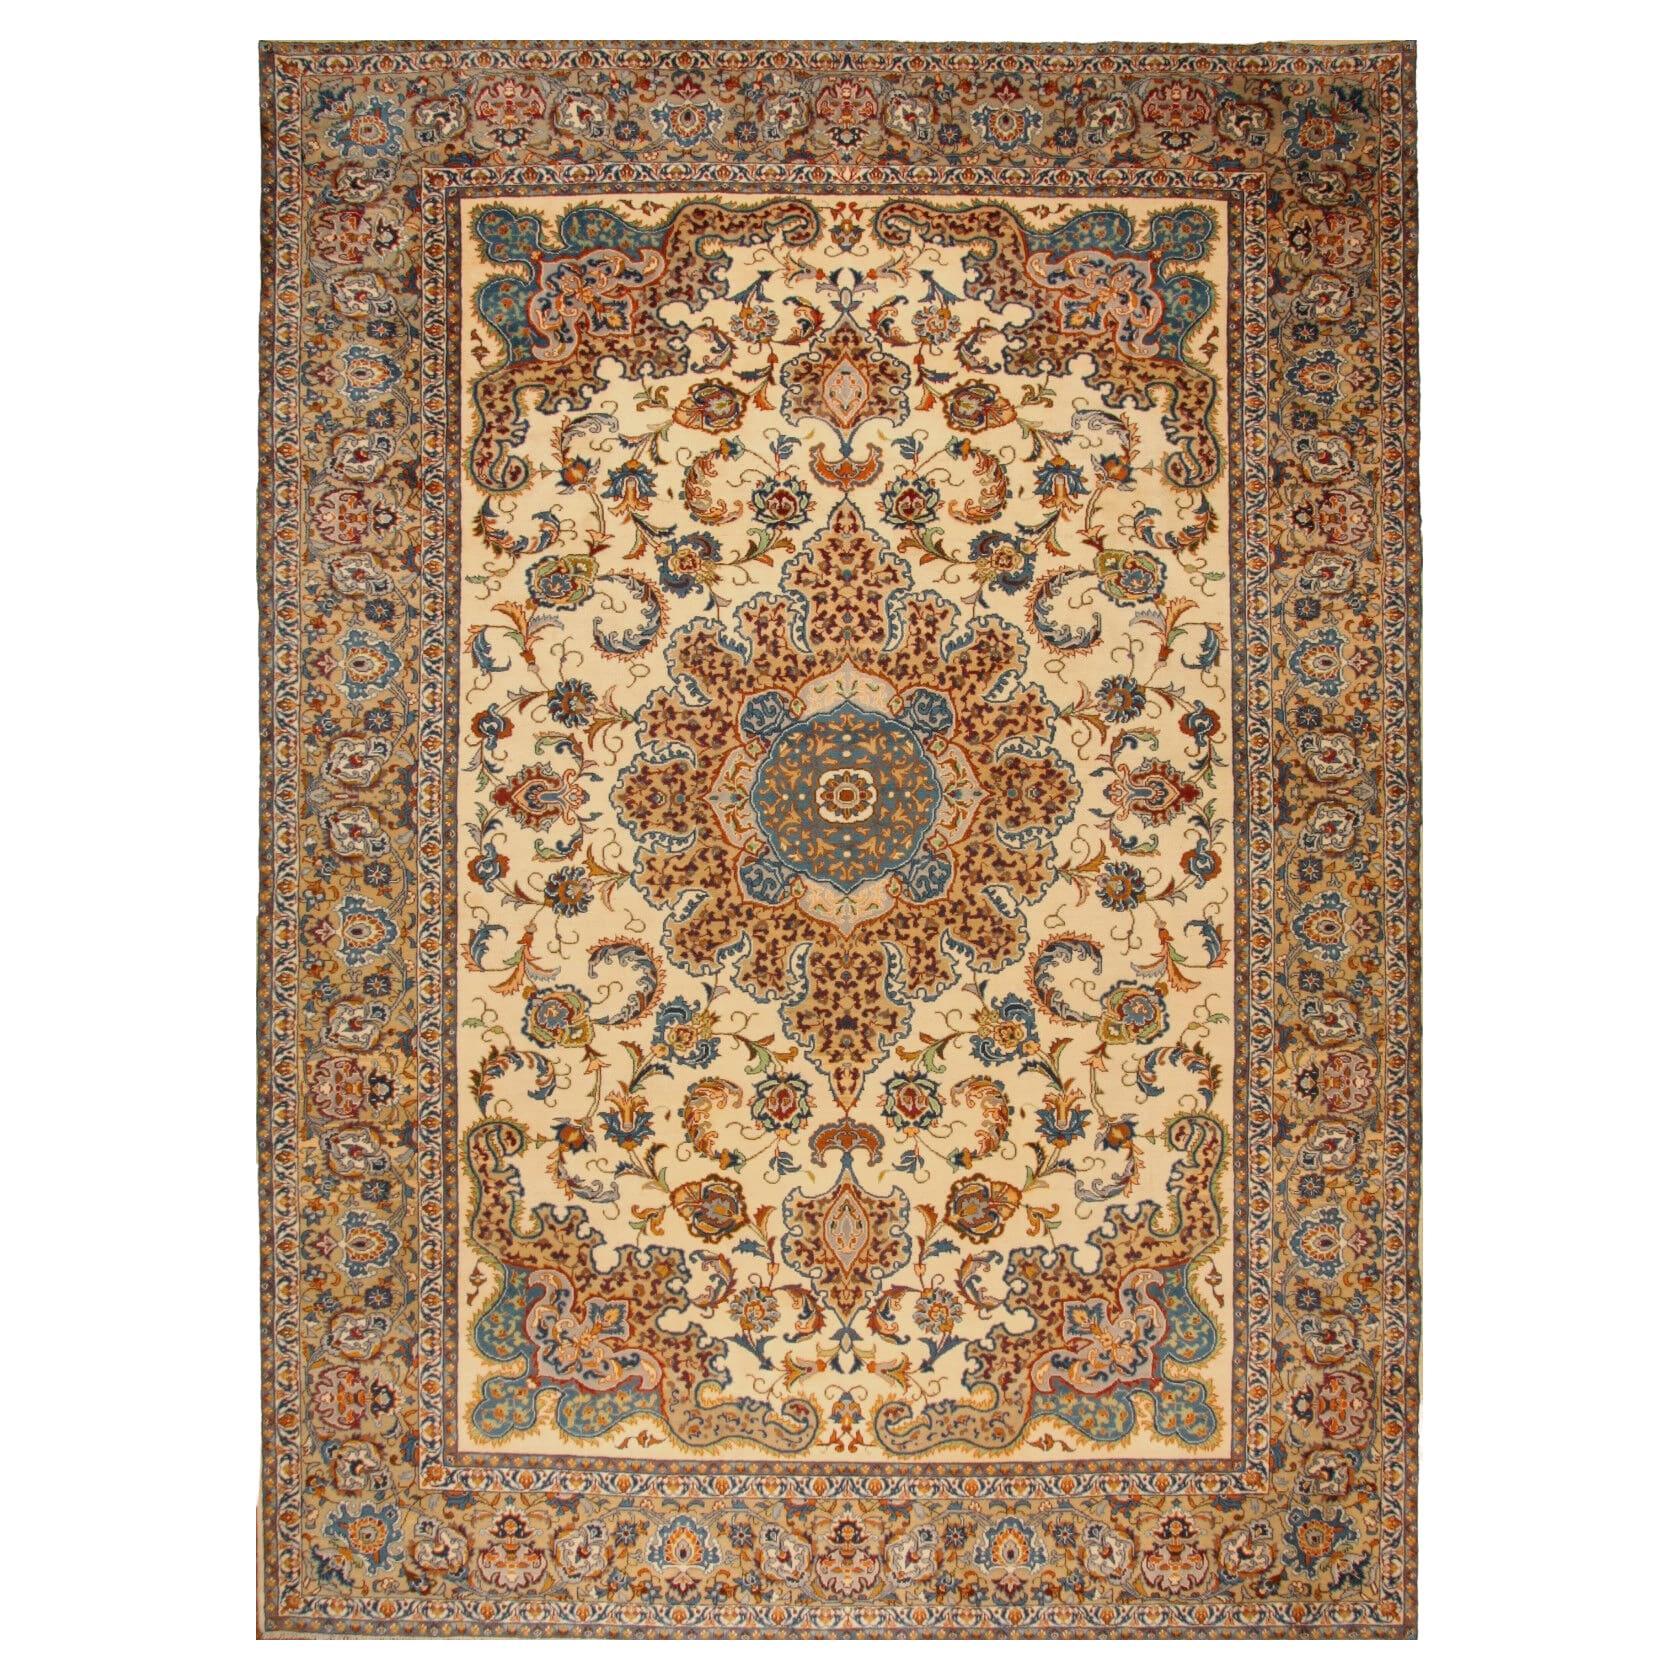 Handgefertigter Vintage Isfahan-Teppich im persischen Stil 9.9' x 13,7', 1990er Jahre - 1T45